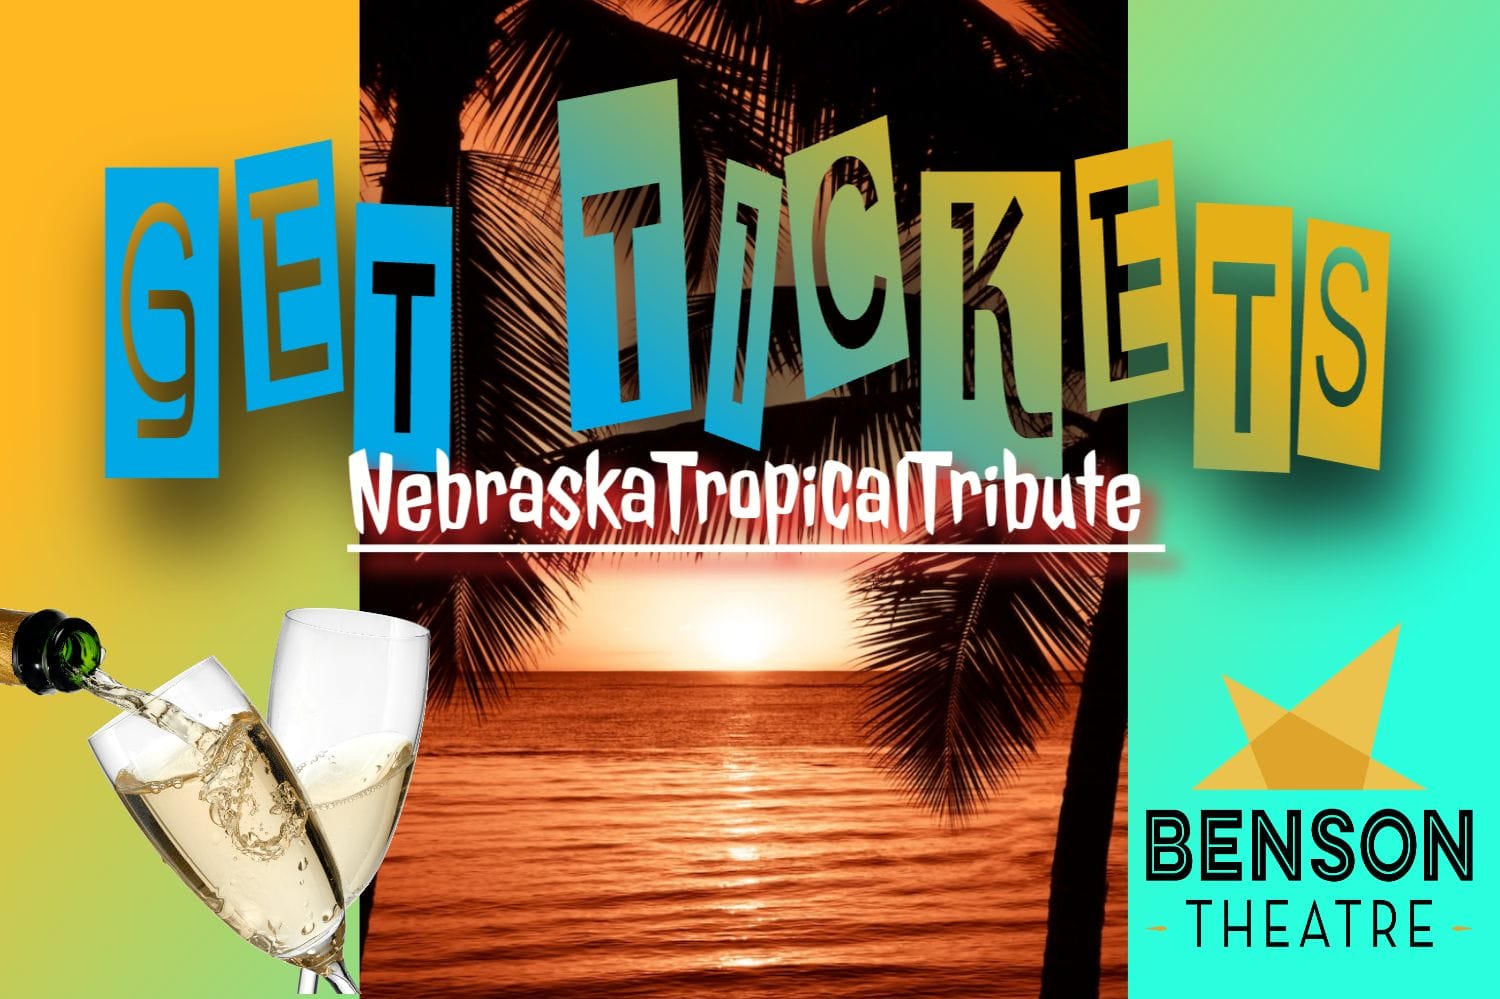 Nebraska Tropical Tribute